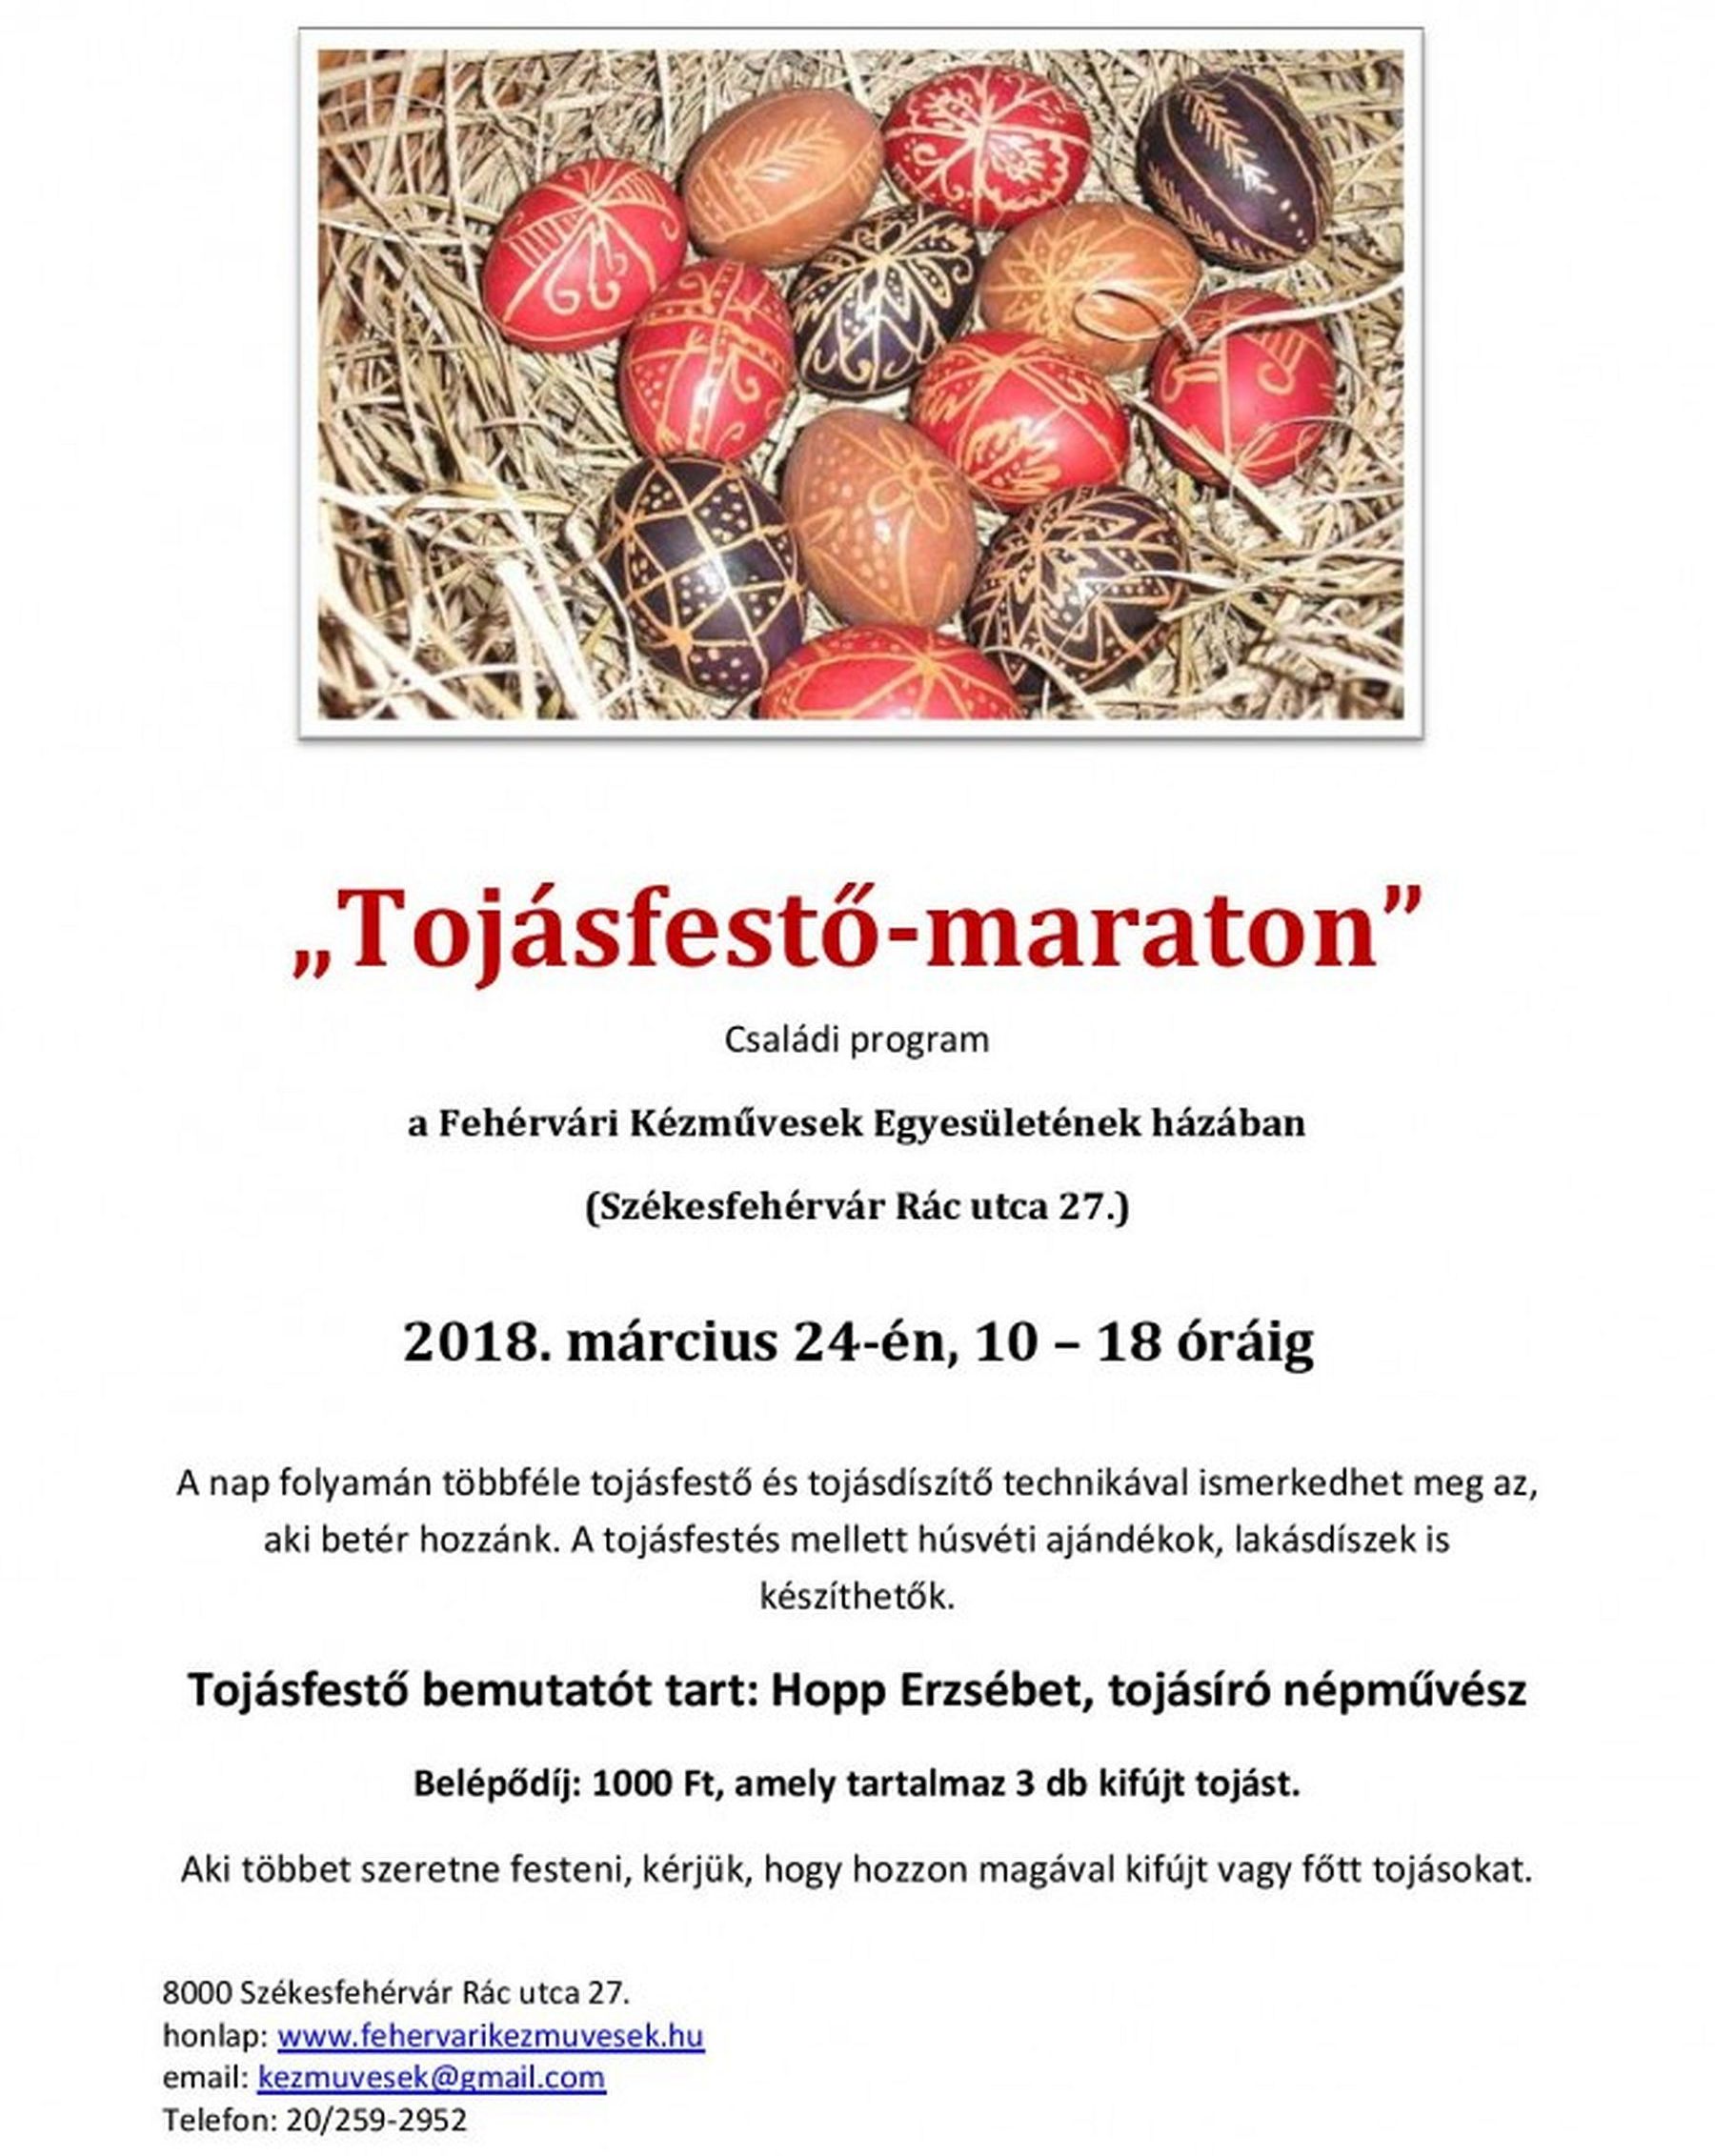 Tojásfestő maraton lesz szombaton a Fehérvári Kézművesek Egyesülete Házában